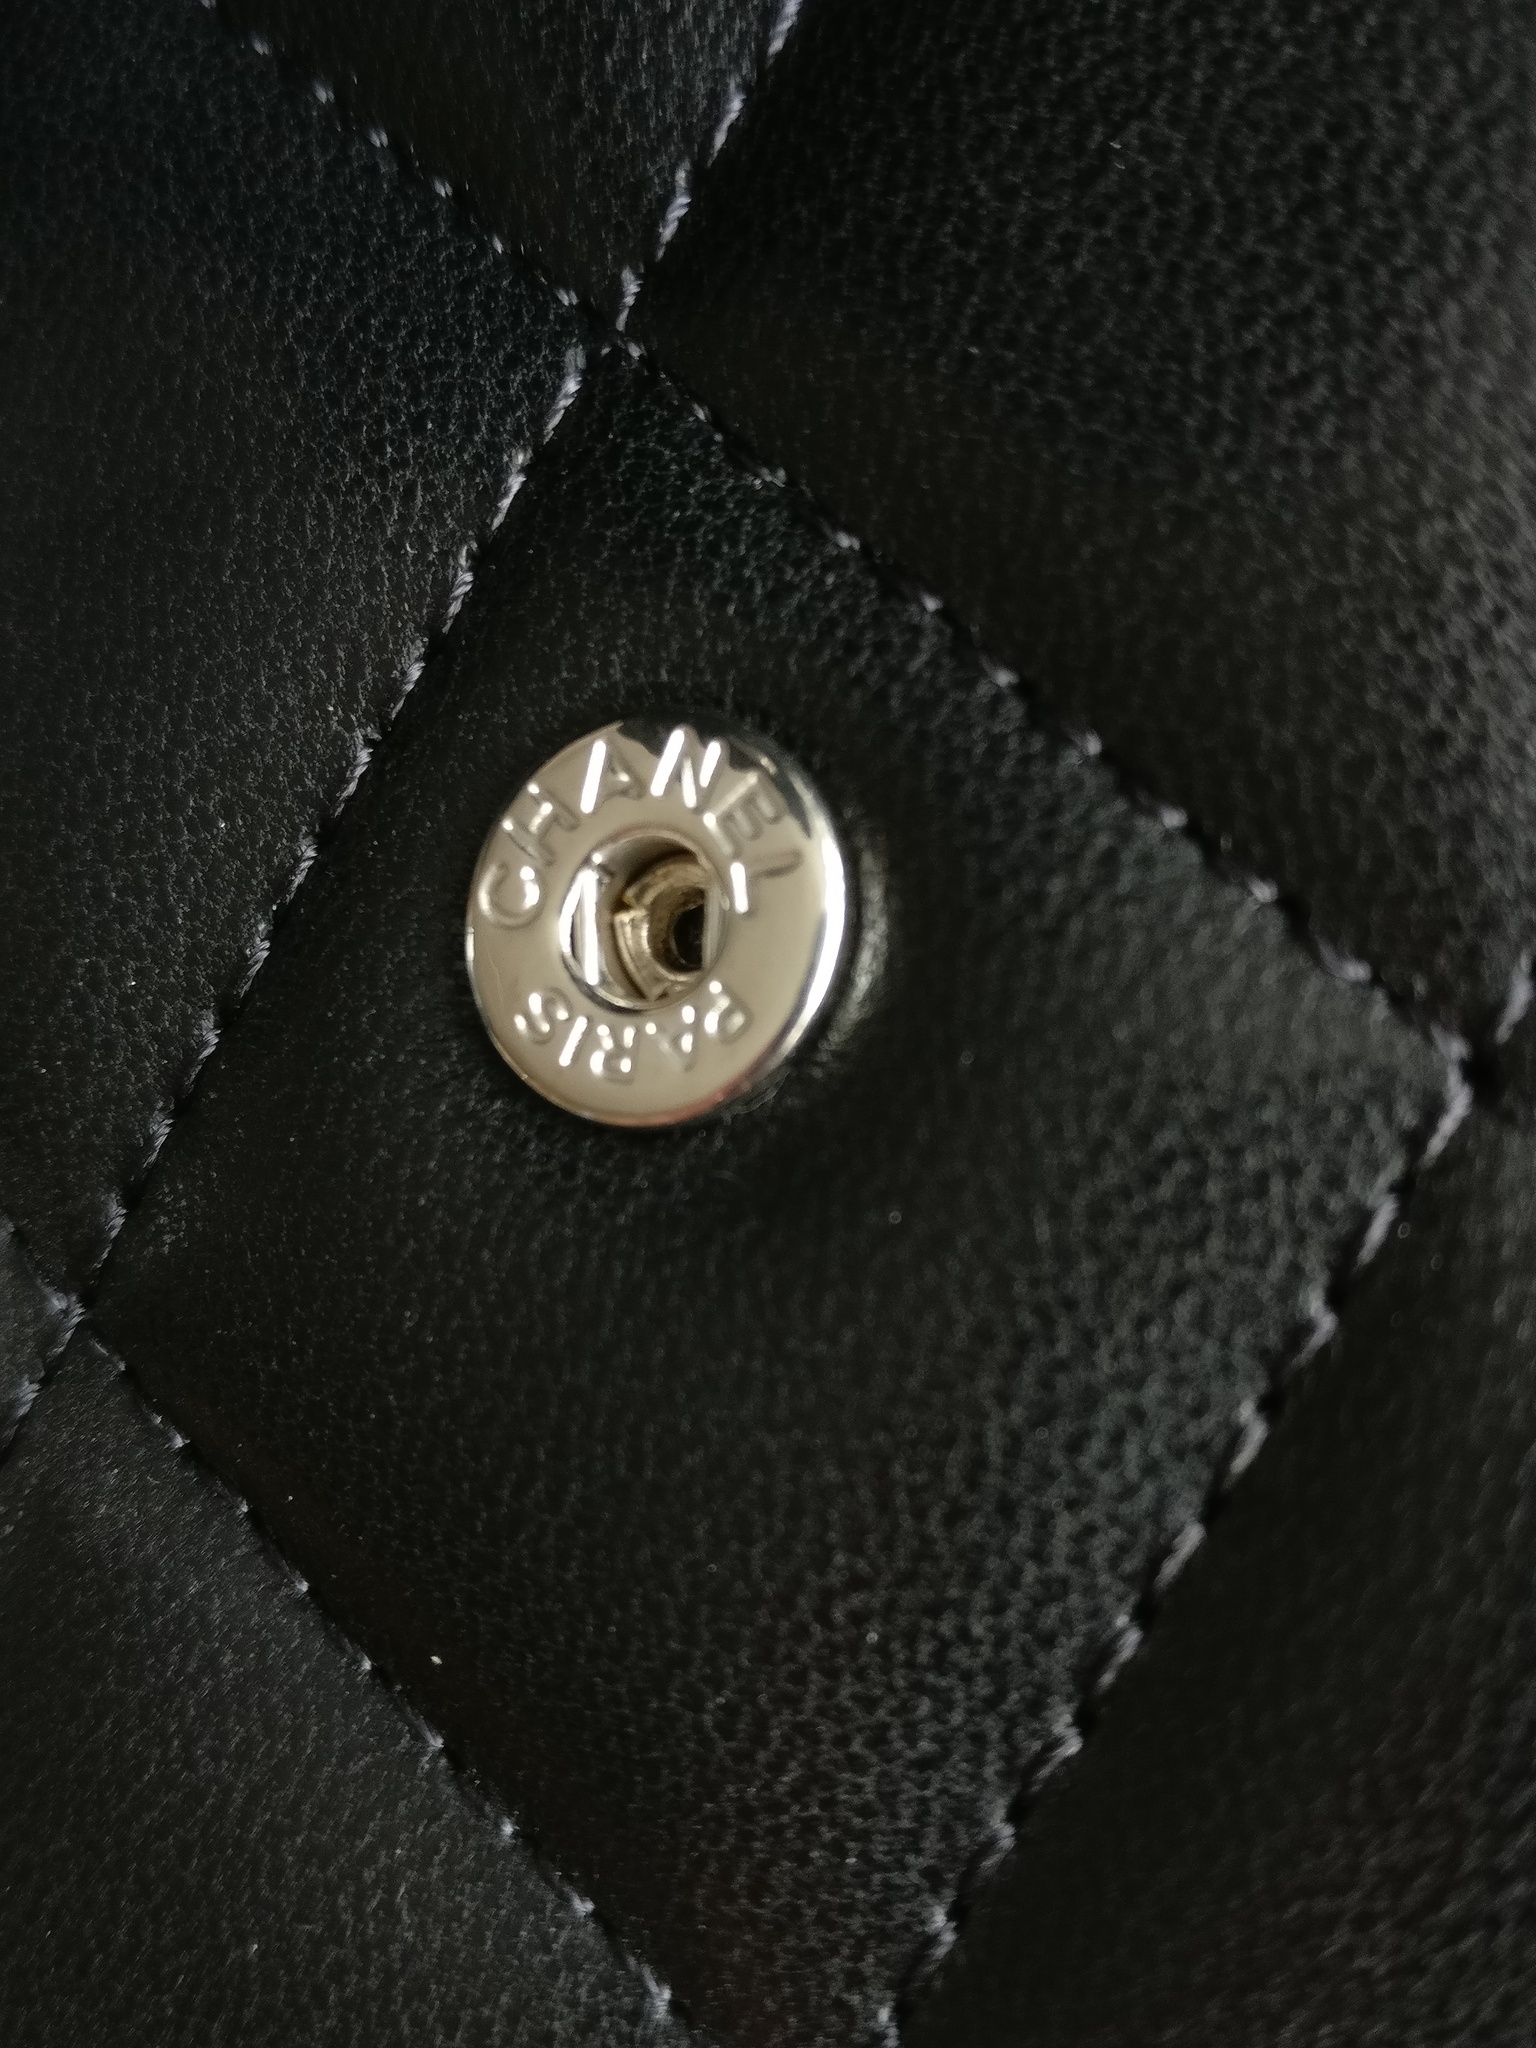 Chanel classic wallet black lambskin SHW